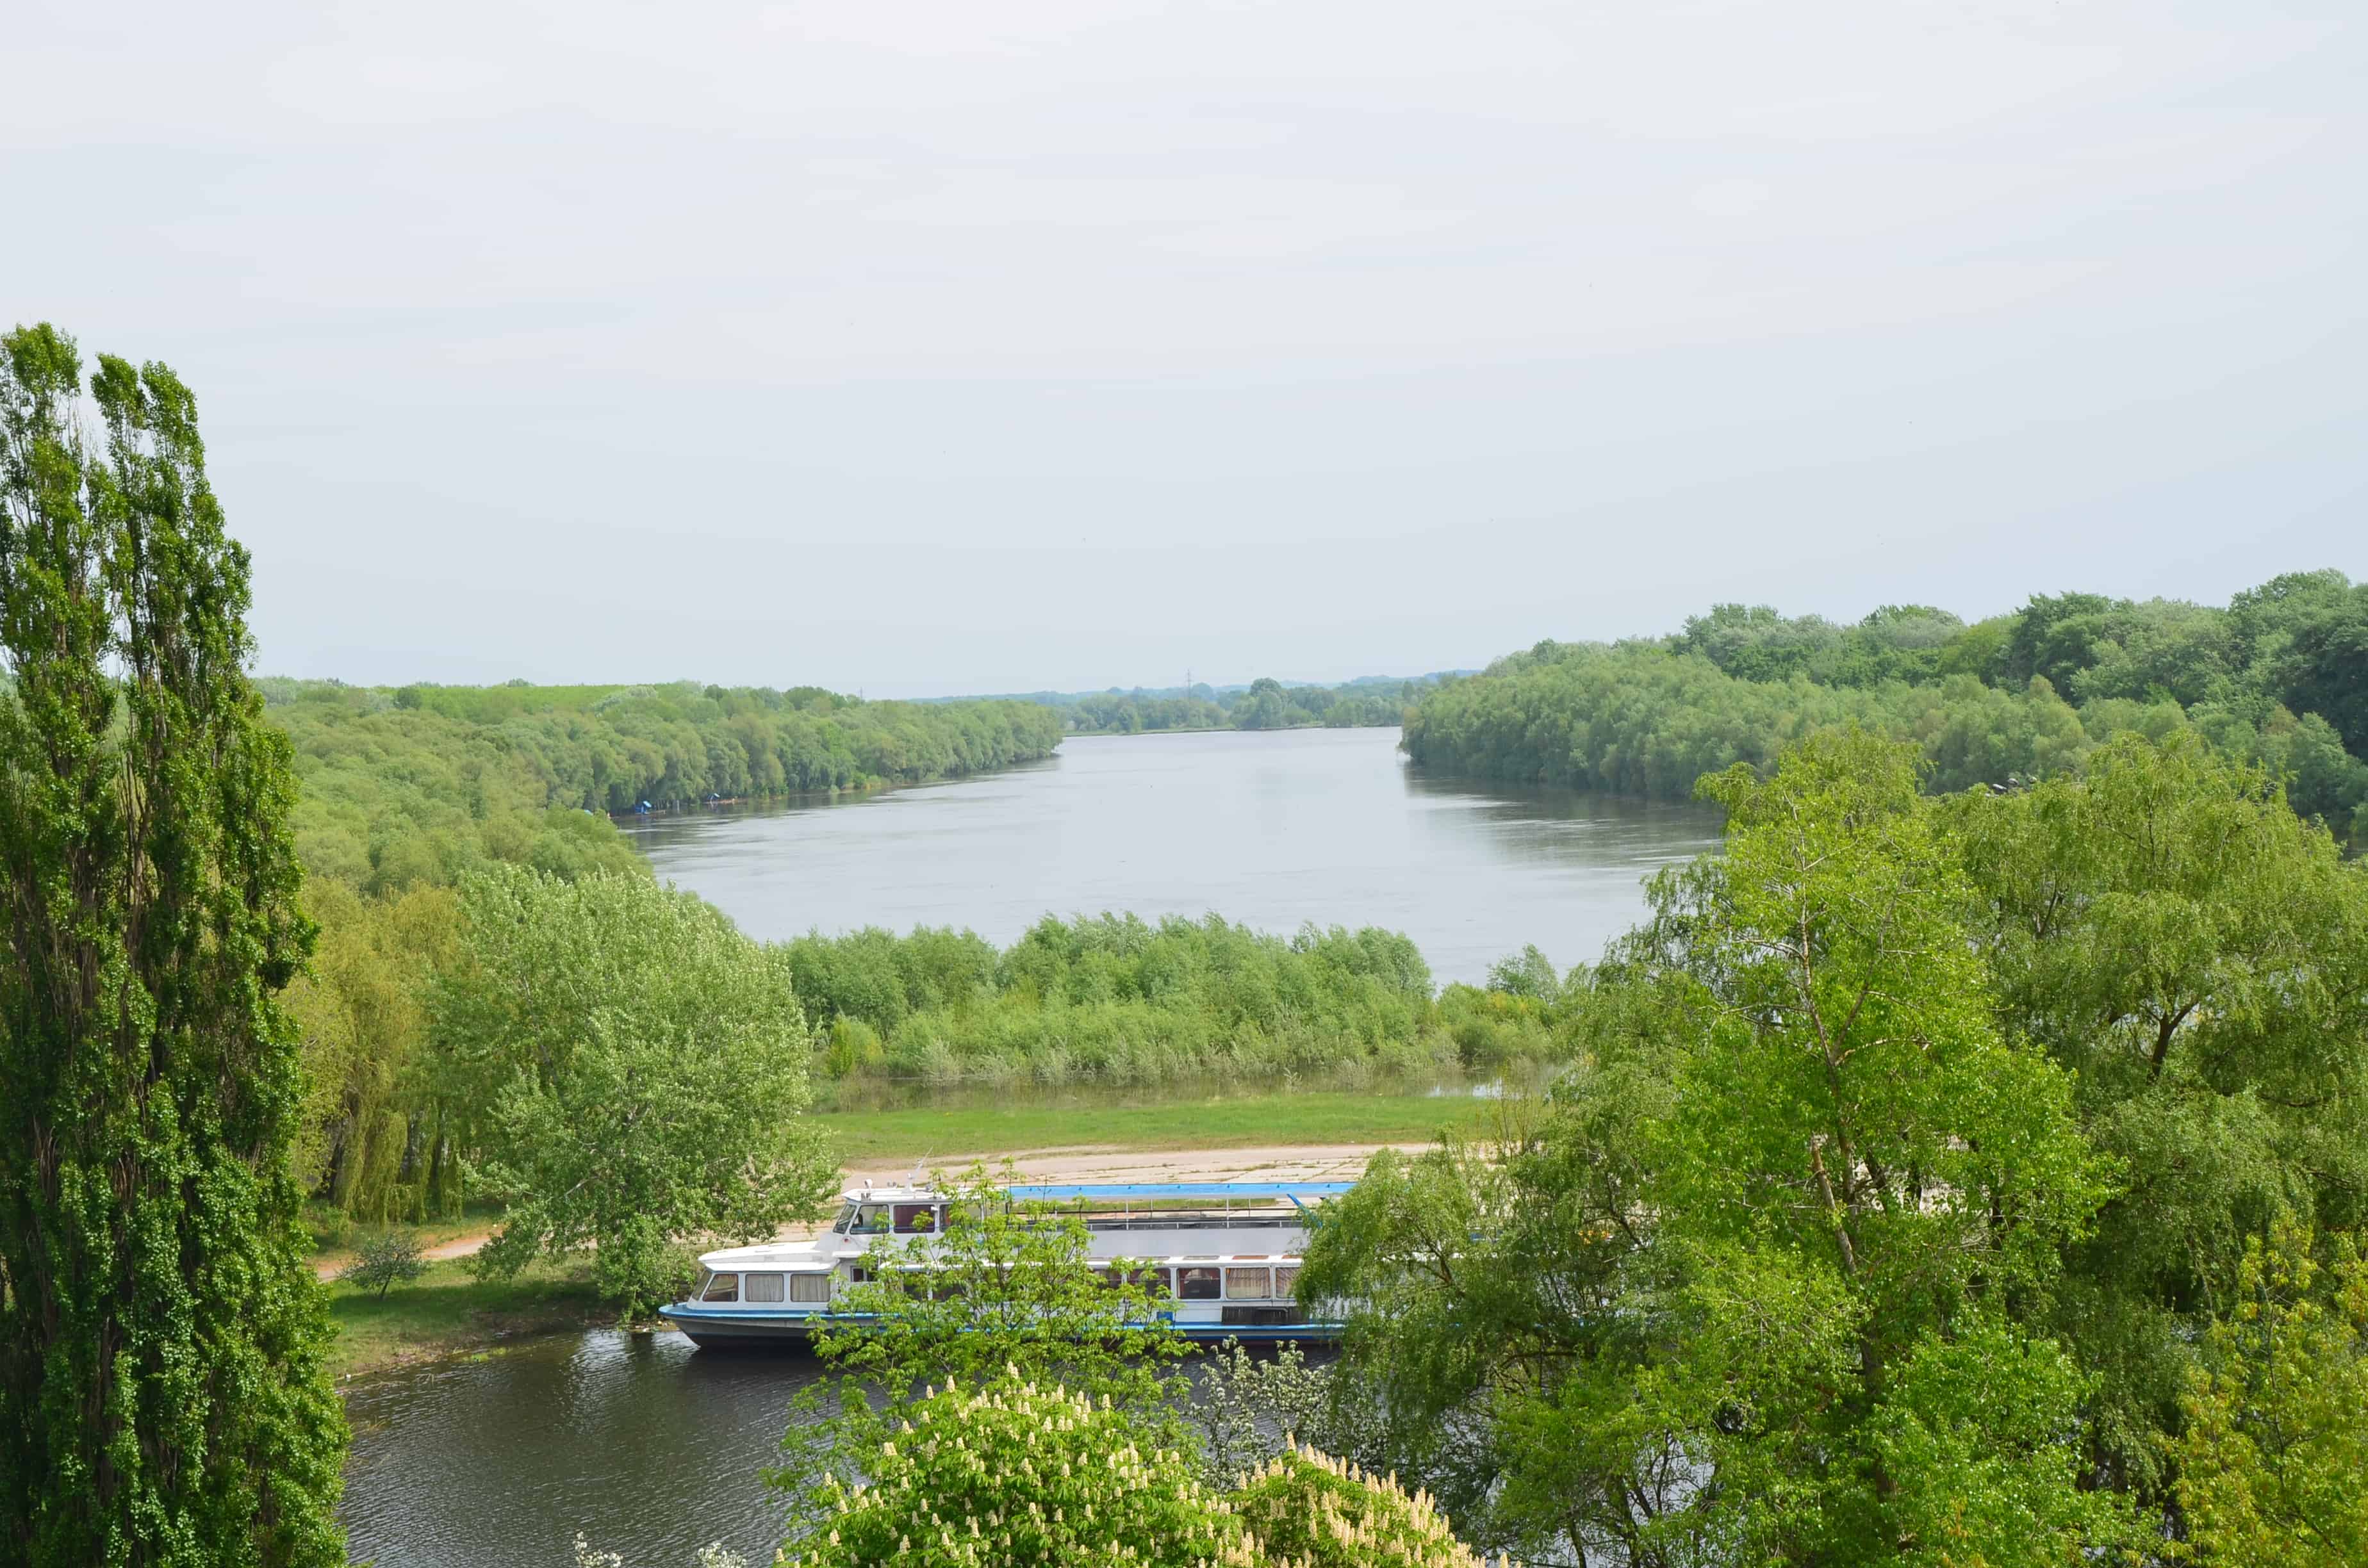 Desna River at Detinets Park in Chernihiv, Ukraine